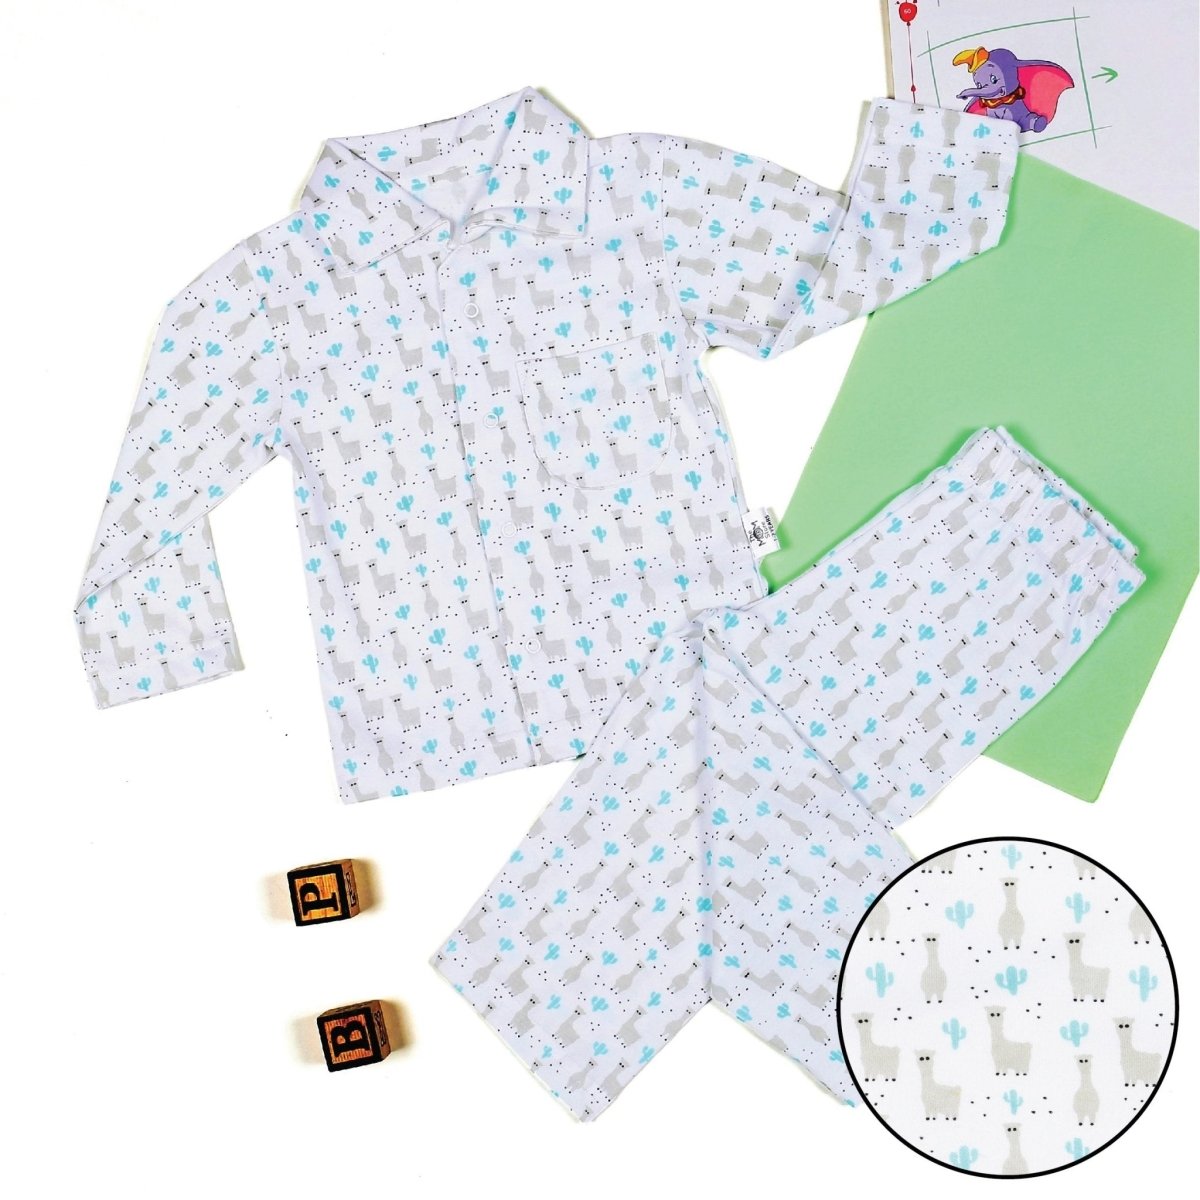 Baby Pajama Set - Baby Llama - TPS-BYLMA-0-6